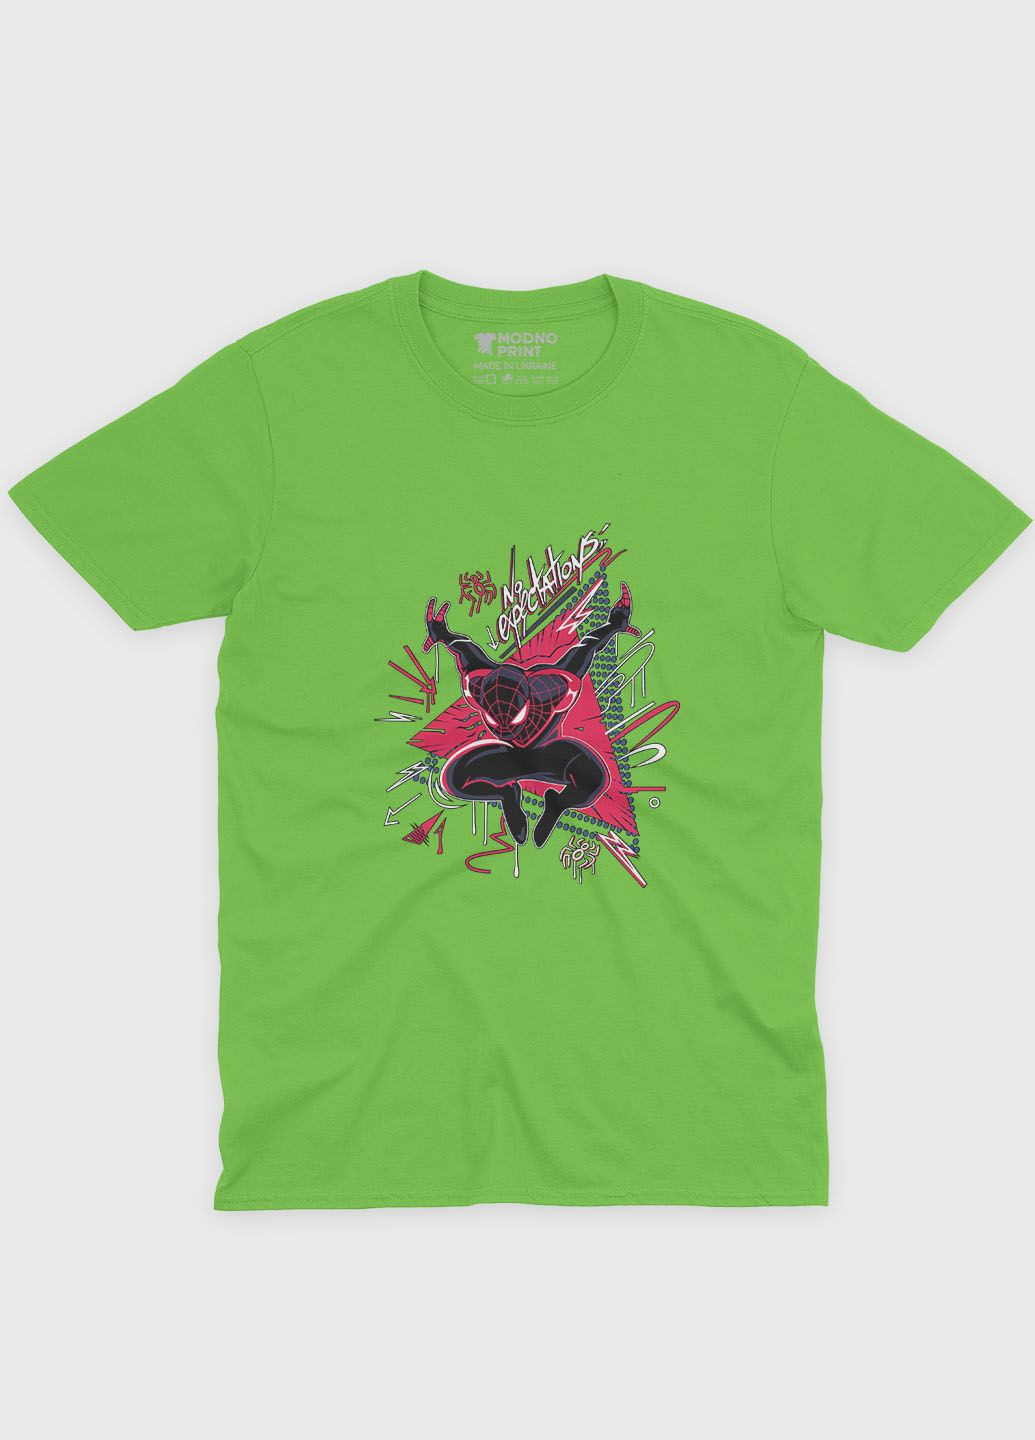 Салатовая демисезонная футболка для мальчика с принтом супергероя - человек-паук (ts001-1-kiw-006-014-049-b) Modno